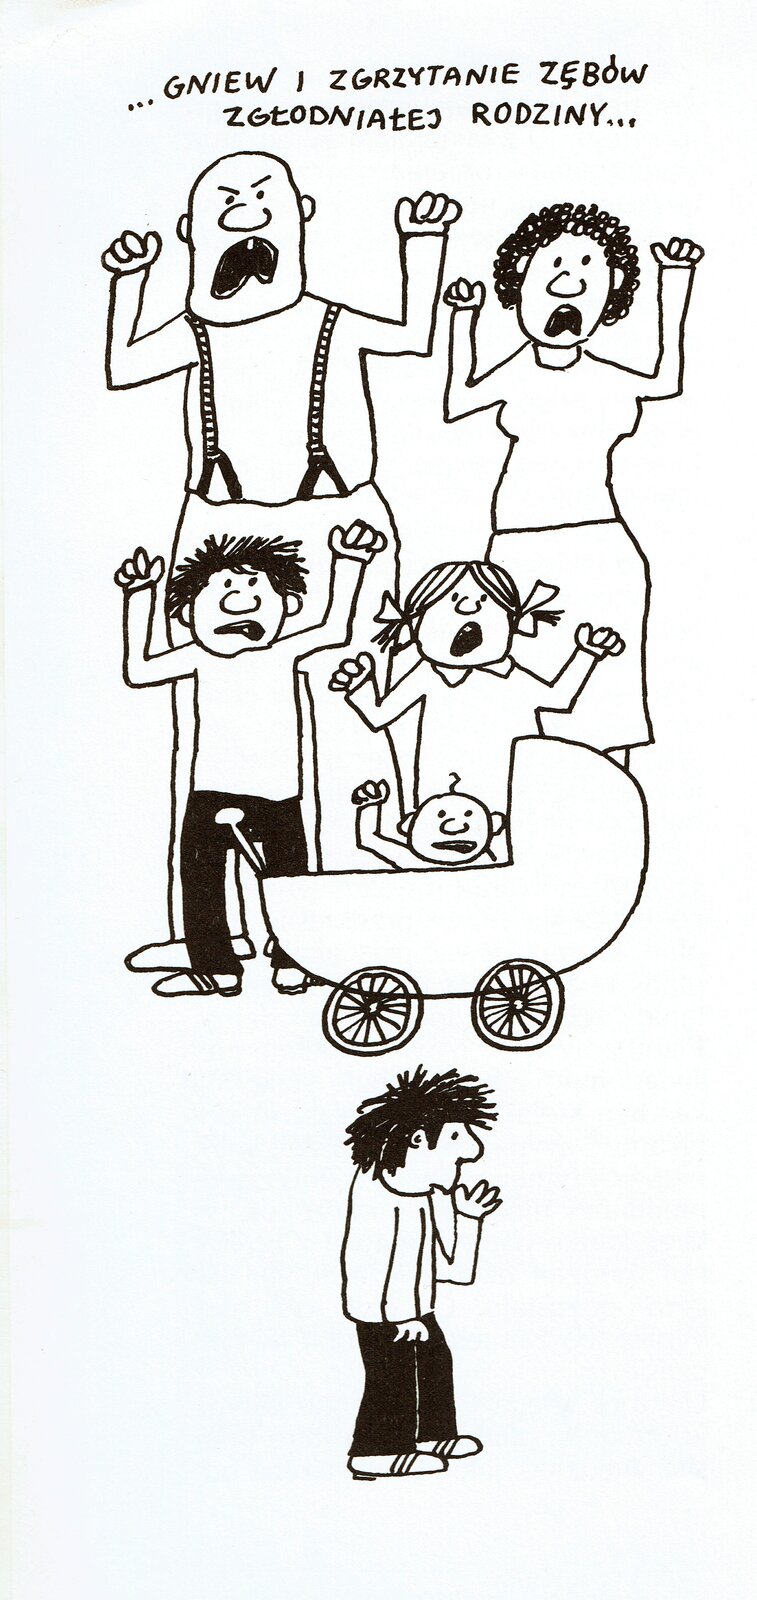 Ilustracja przedstawia pracę Bohdana Butenki z książki Wandy Kobyłęckiej "Jak oswoić lwa". Ukazuje rodzinę z zezłoszczonymi minami. W tyle stoją mężczyzna z kobietą, przed nimi pięcioro dzieci, z których jedno to niemowlę w wózku. Chłopiec z przodu stoi bokiem i trzyma palec w buzi, pozostali unoszą ręce i krzyczą. Czarno-biała ilustracja to rysunek konturowy. Na górze znajduje się napis: ...Gniew i zgrzytanie zębów zgłodniałej rodziny...